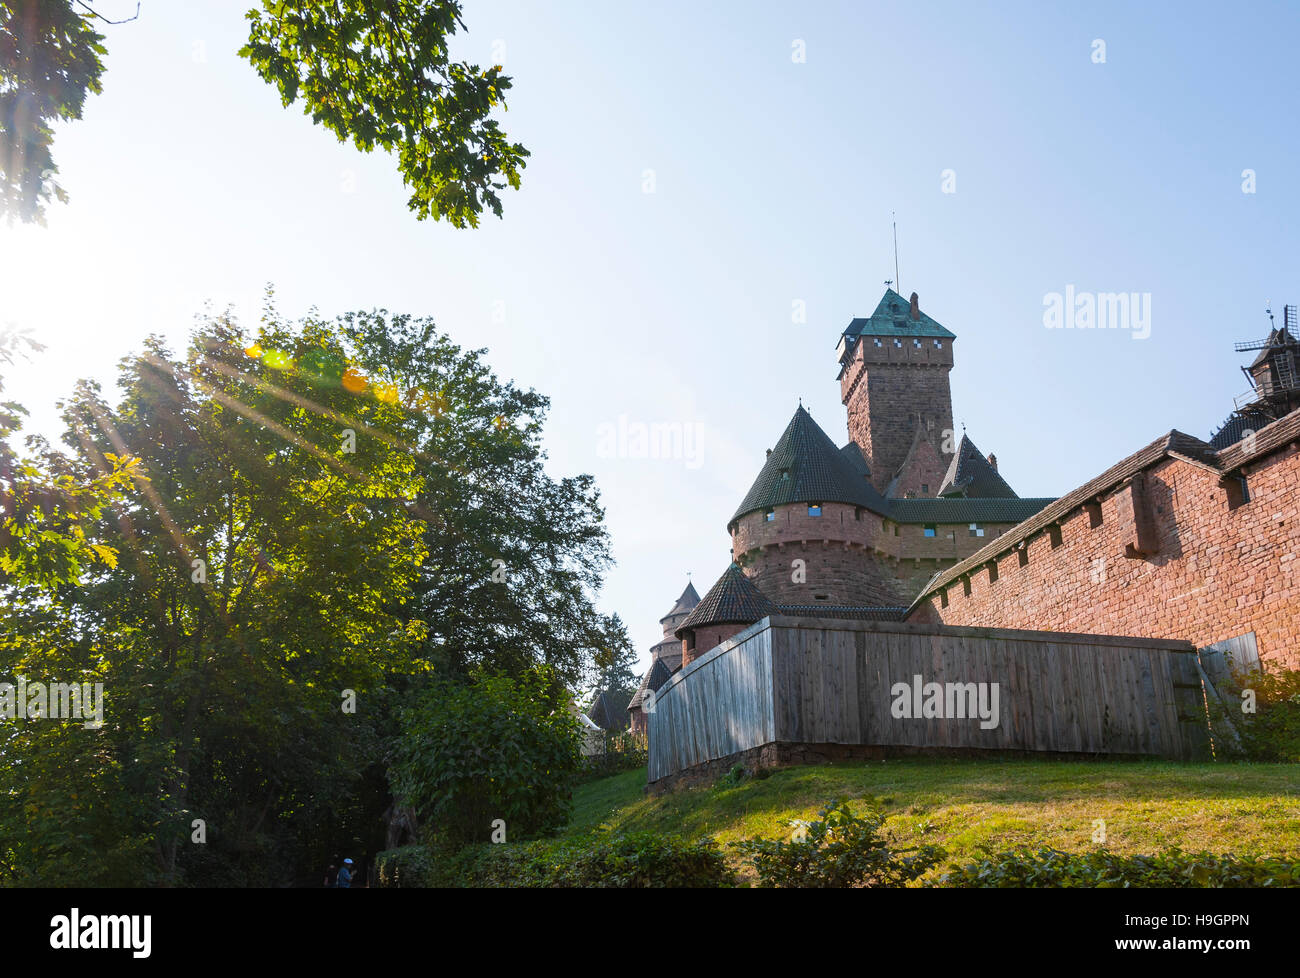 Burg des Mittelalters, romantische Architektur, Elsass, Frankreich Stockfoto